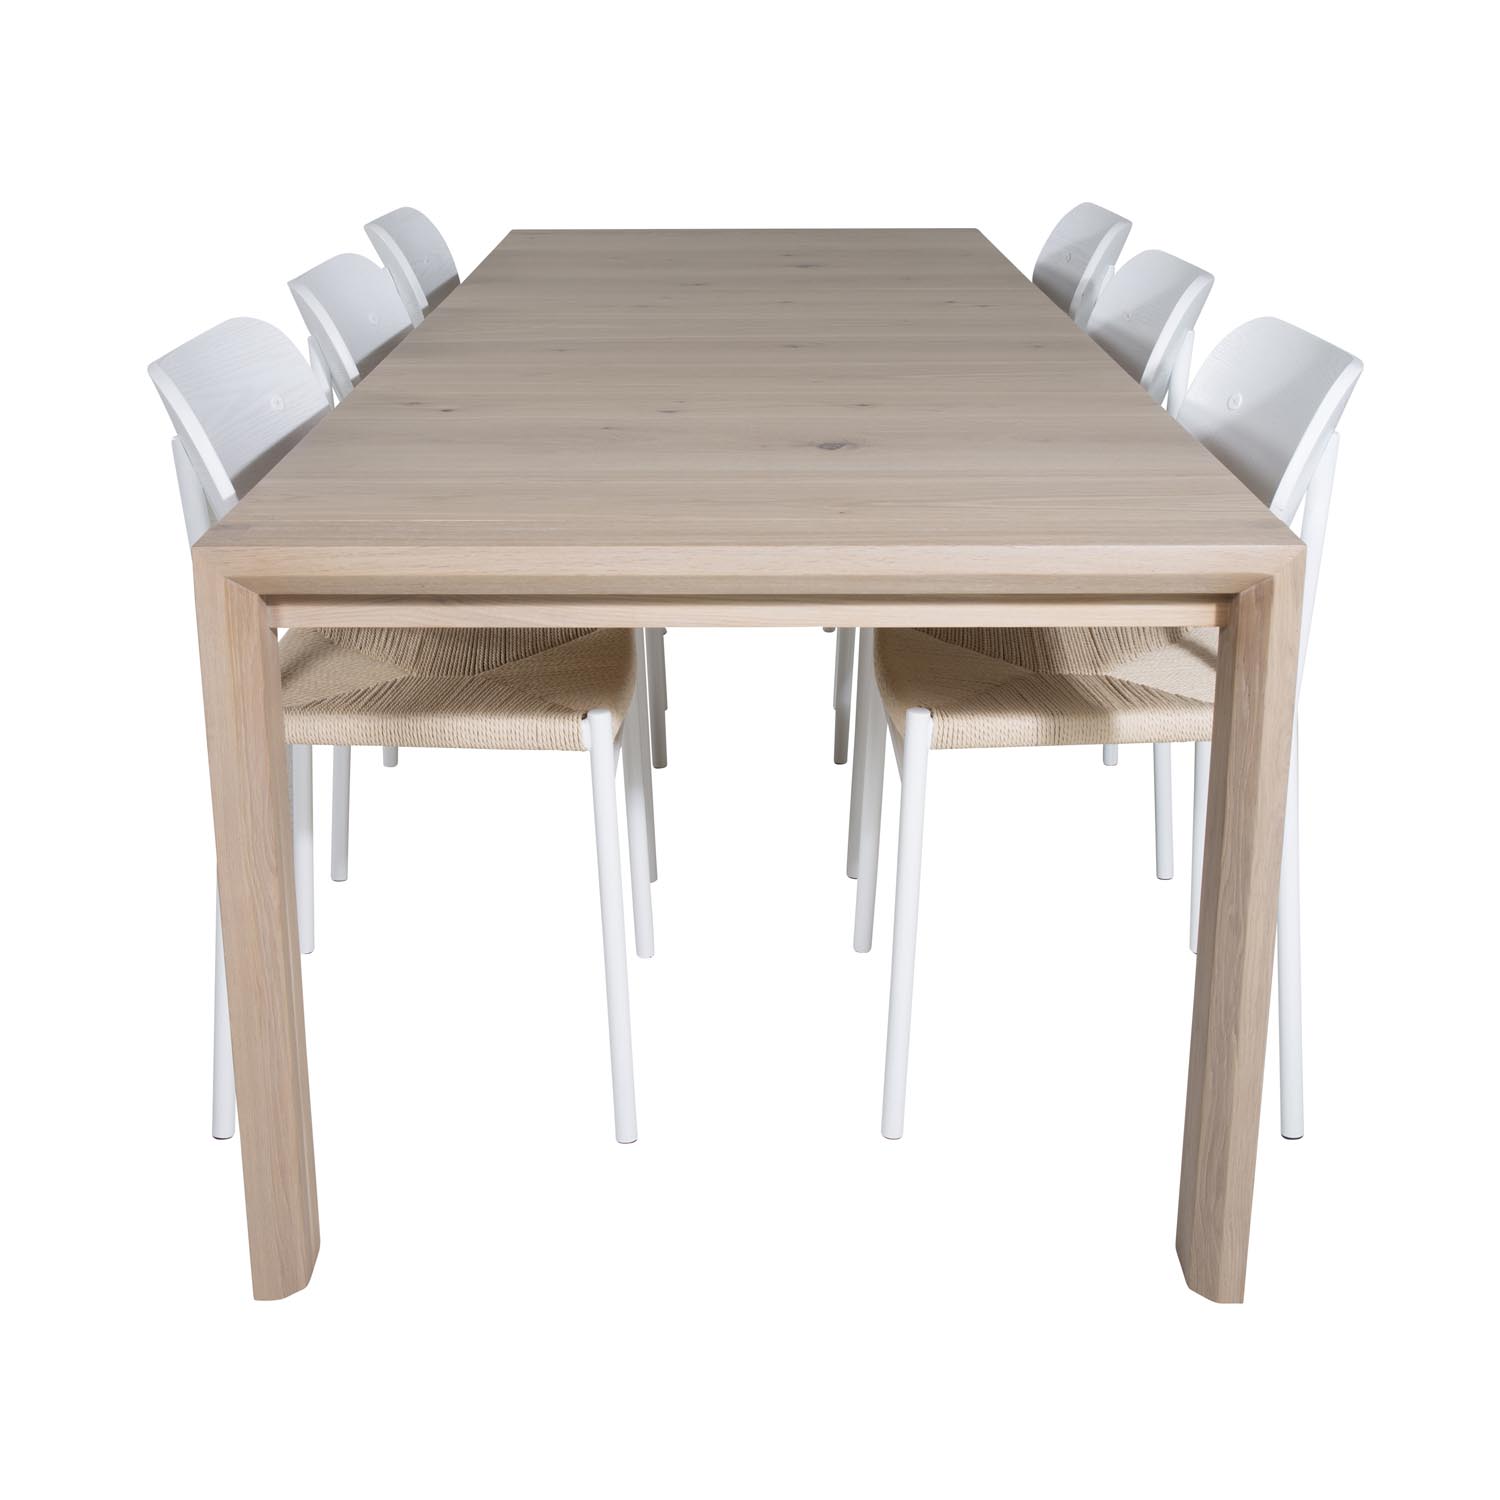 7: VENTURE DESIGN Slider spisebordssæt, m. 6 stole - hvidvasket egefiner/eg, naturfiber, hvid MDF/stål